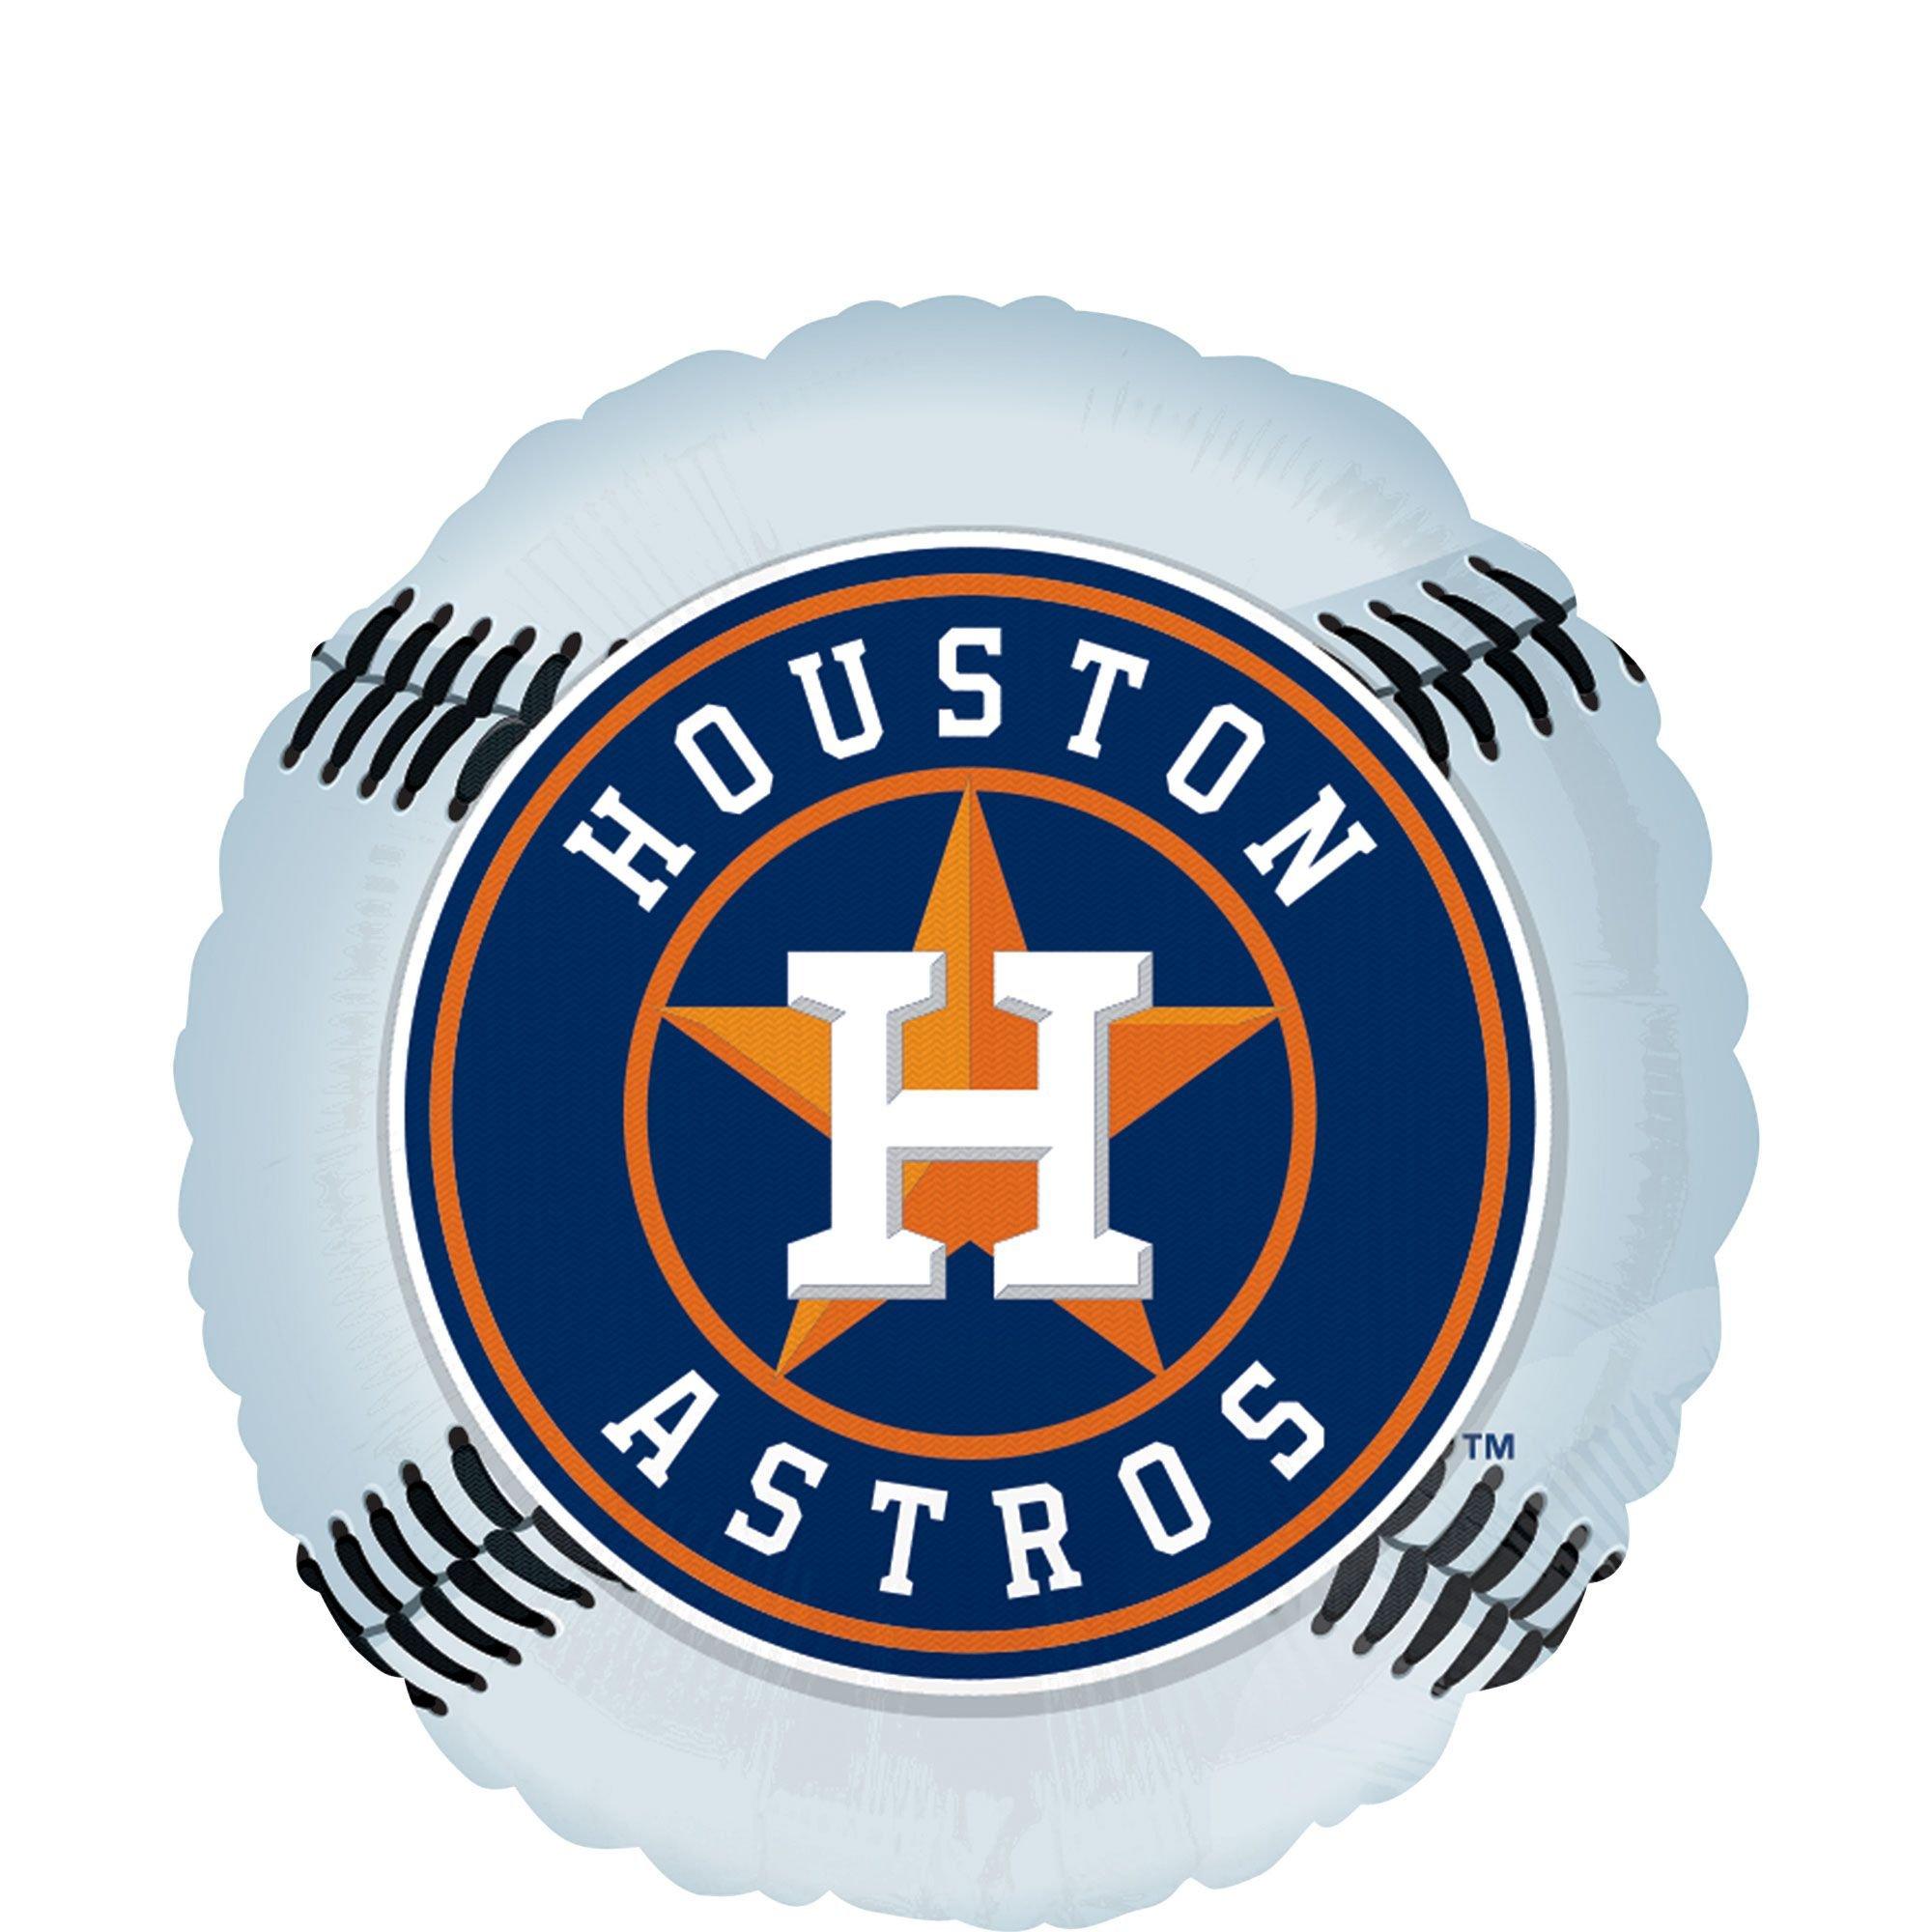 Houston Astros Accessories  Houston Astros Gifts, Houston Astros